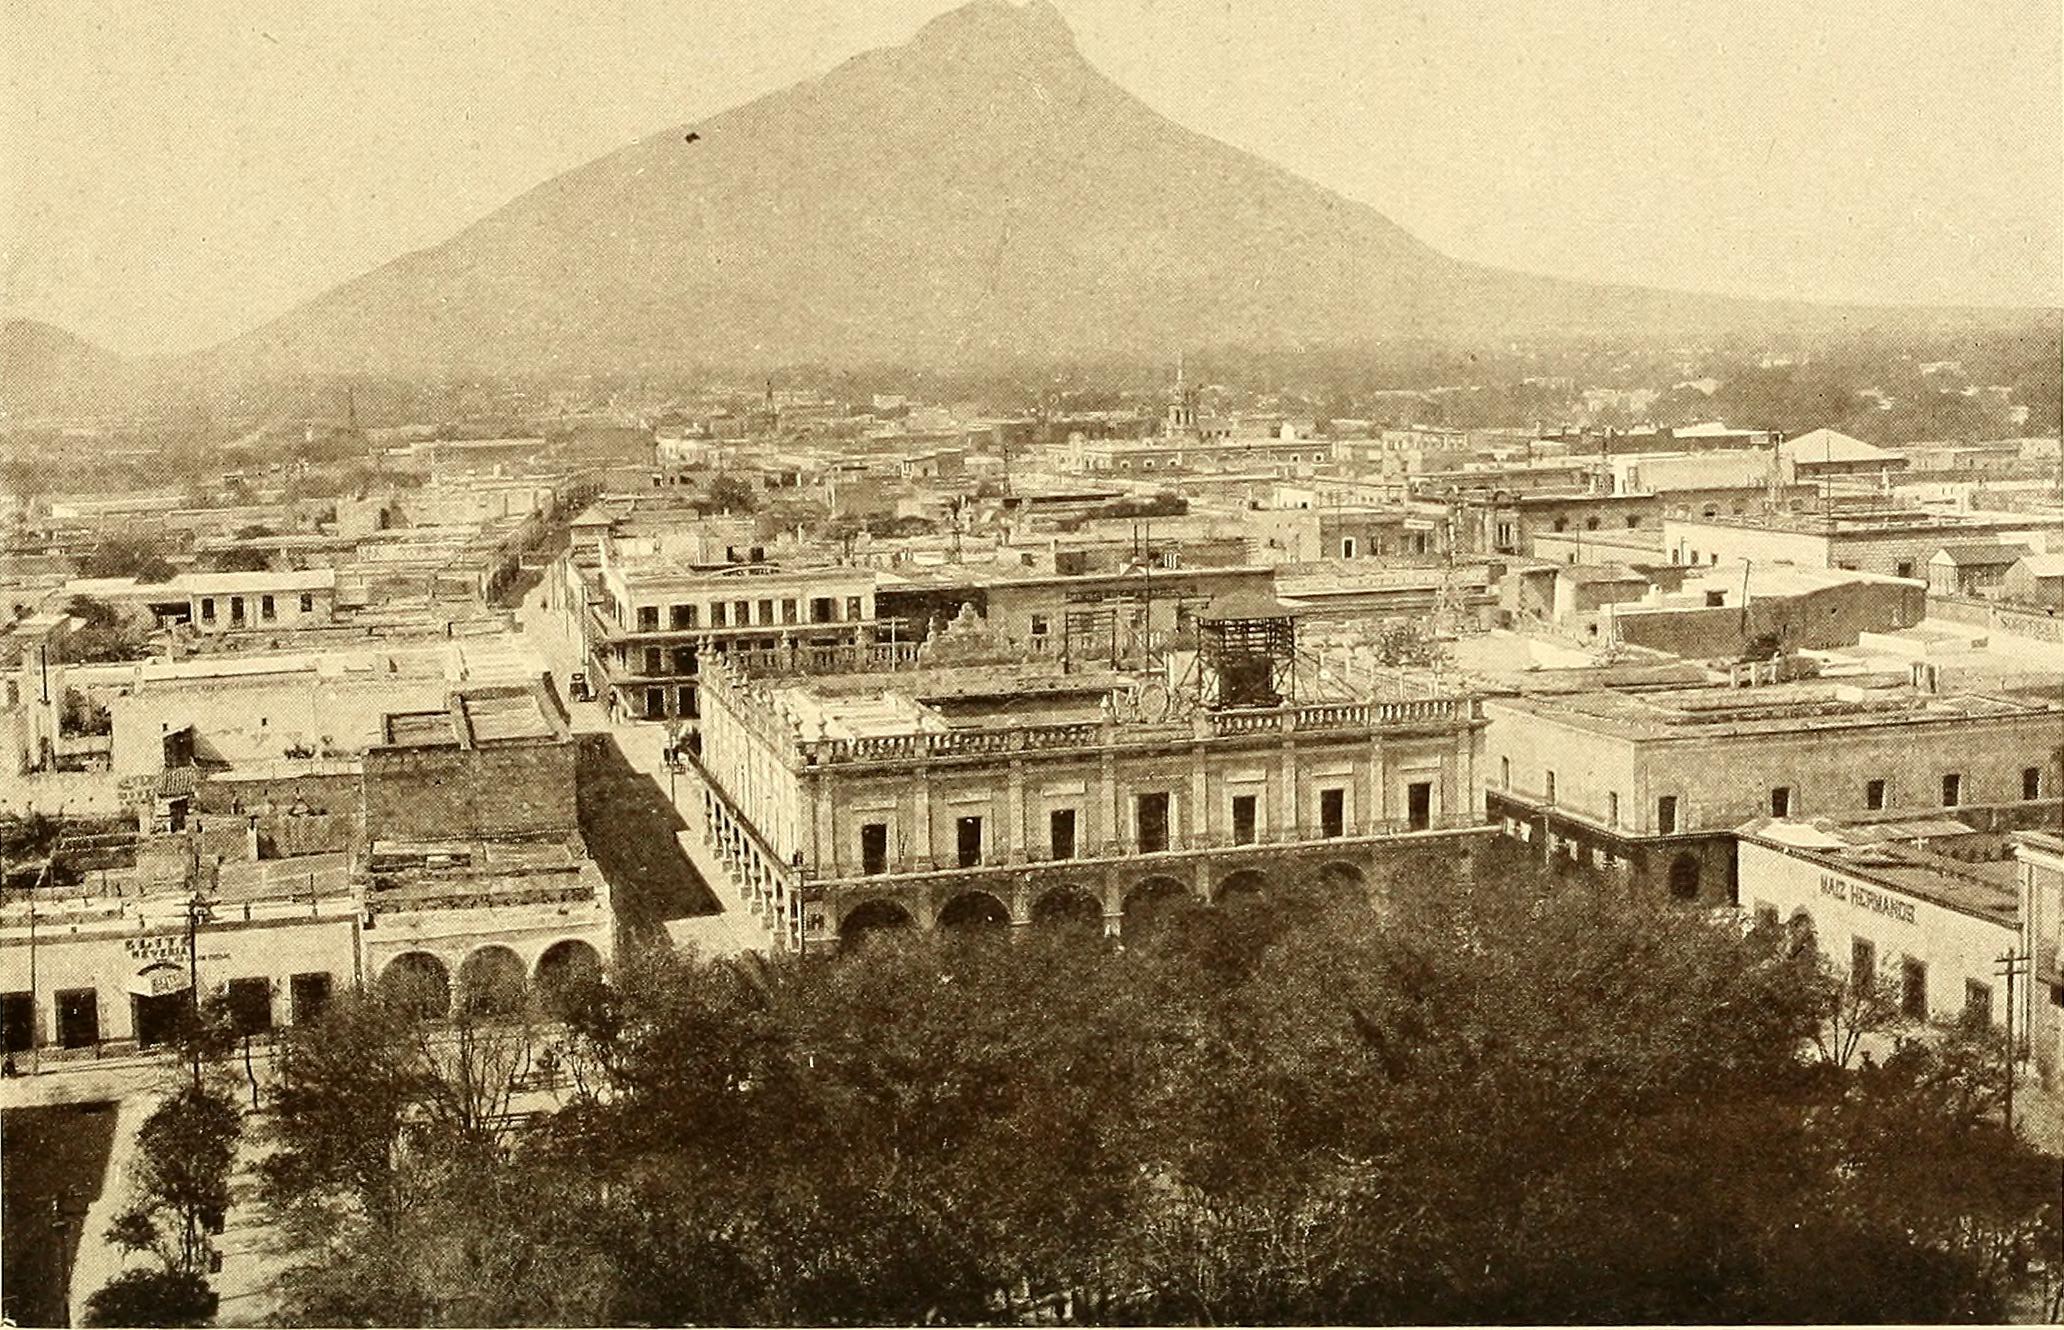 Revolución Mexicana, México, 1910, Foto